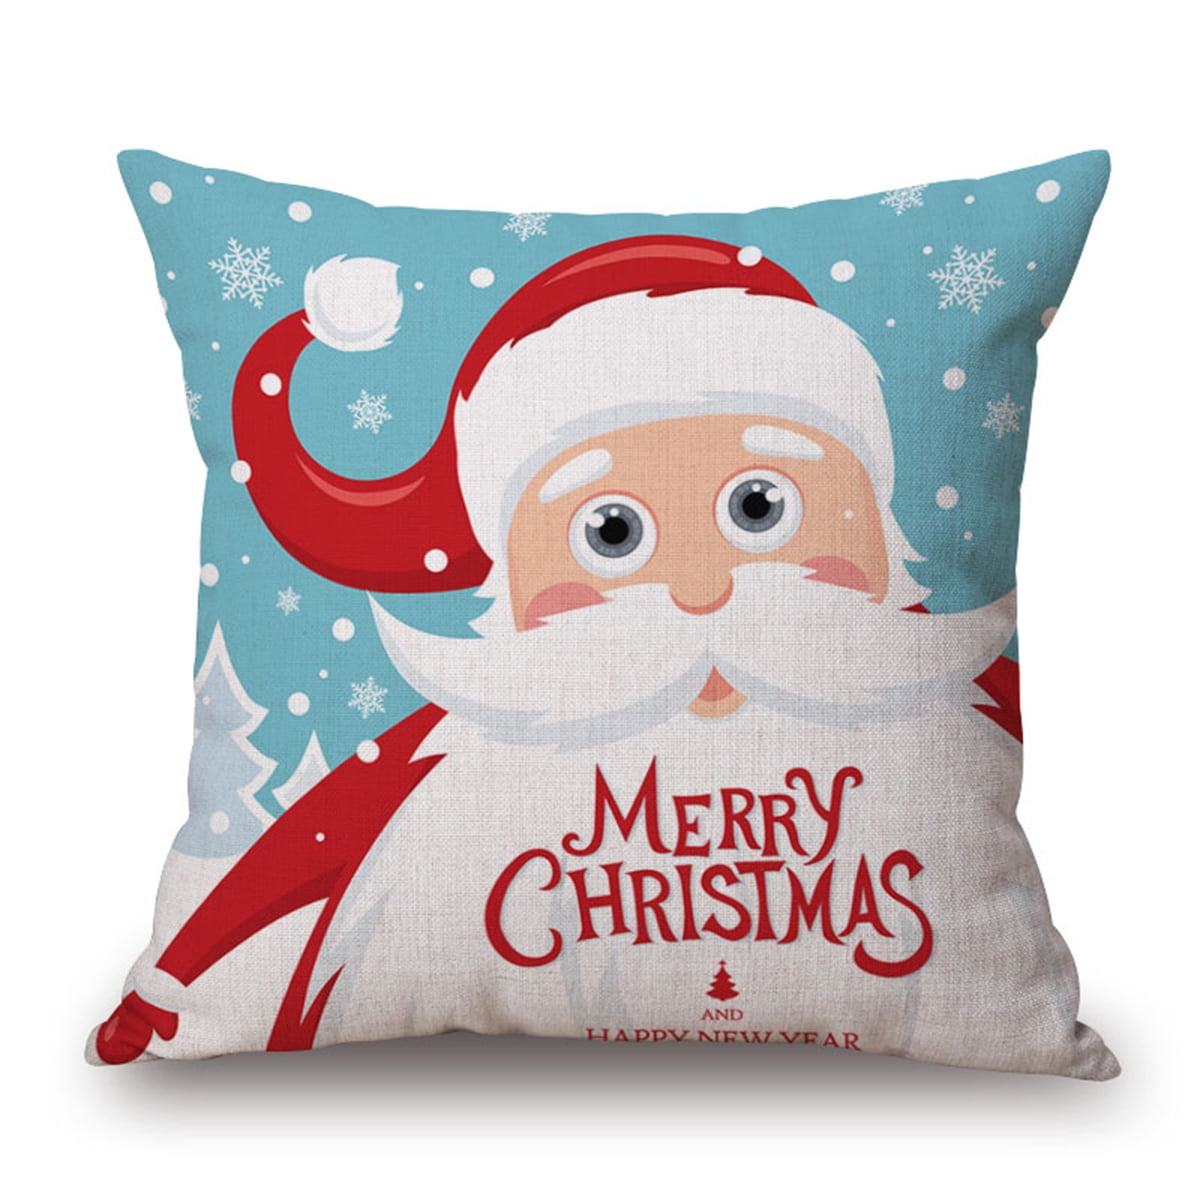 18" Christmas Cotton Linen Throw Pillow Case Sofa Waist Cushion Cover Home Decor 